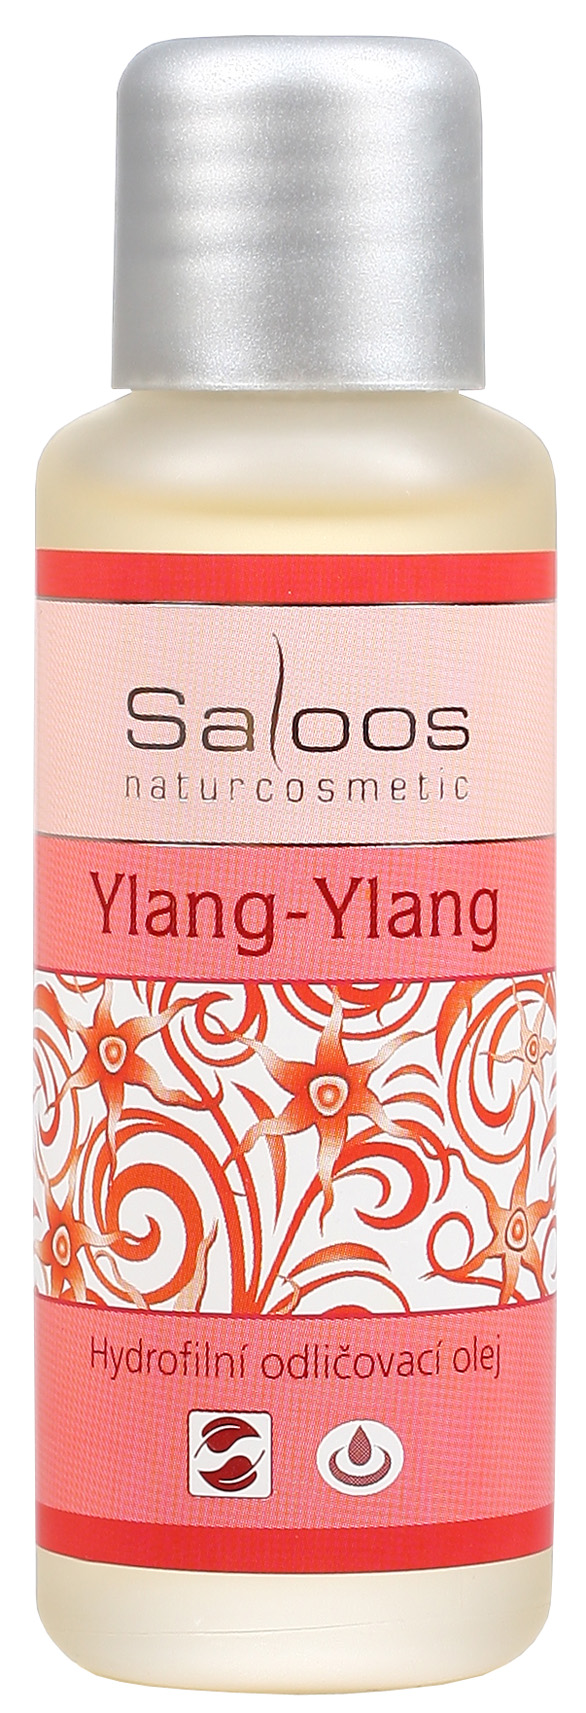 Ylang-ylang - hydrofilní odličovací olej 50